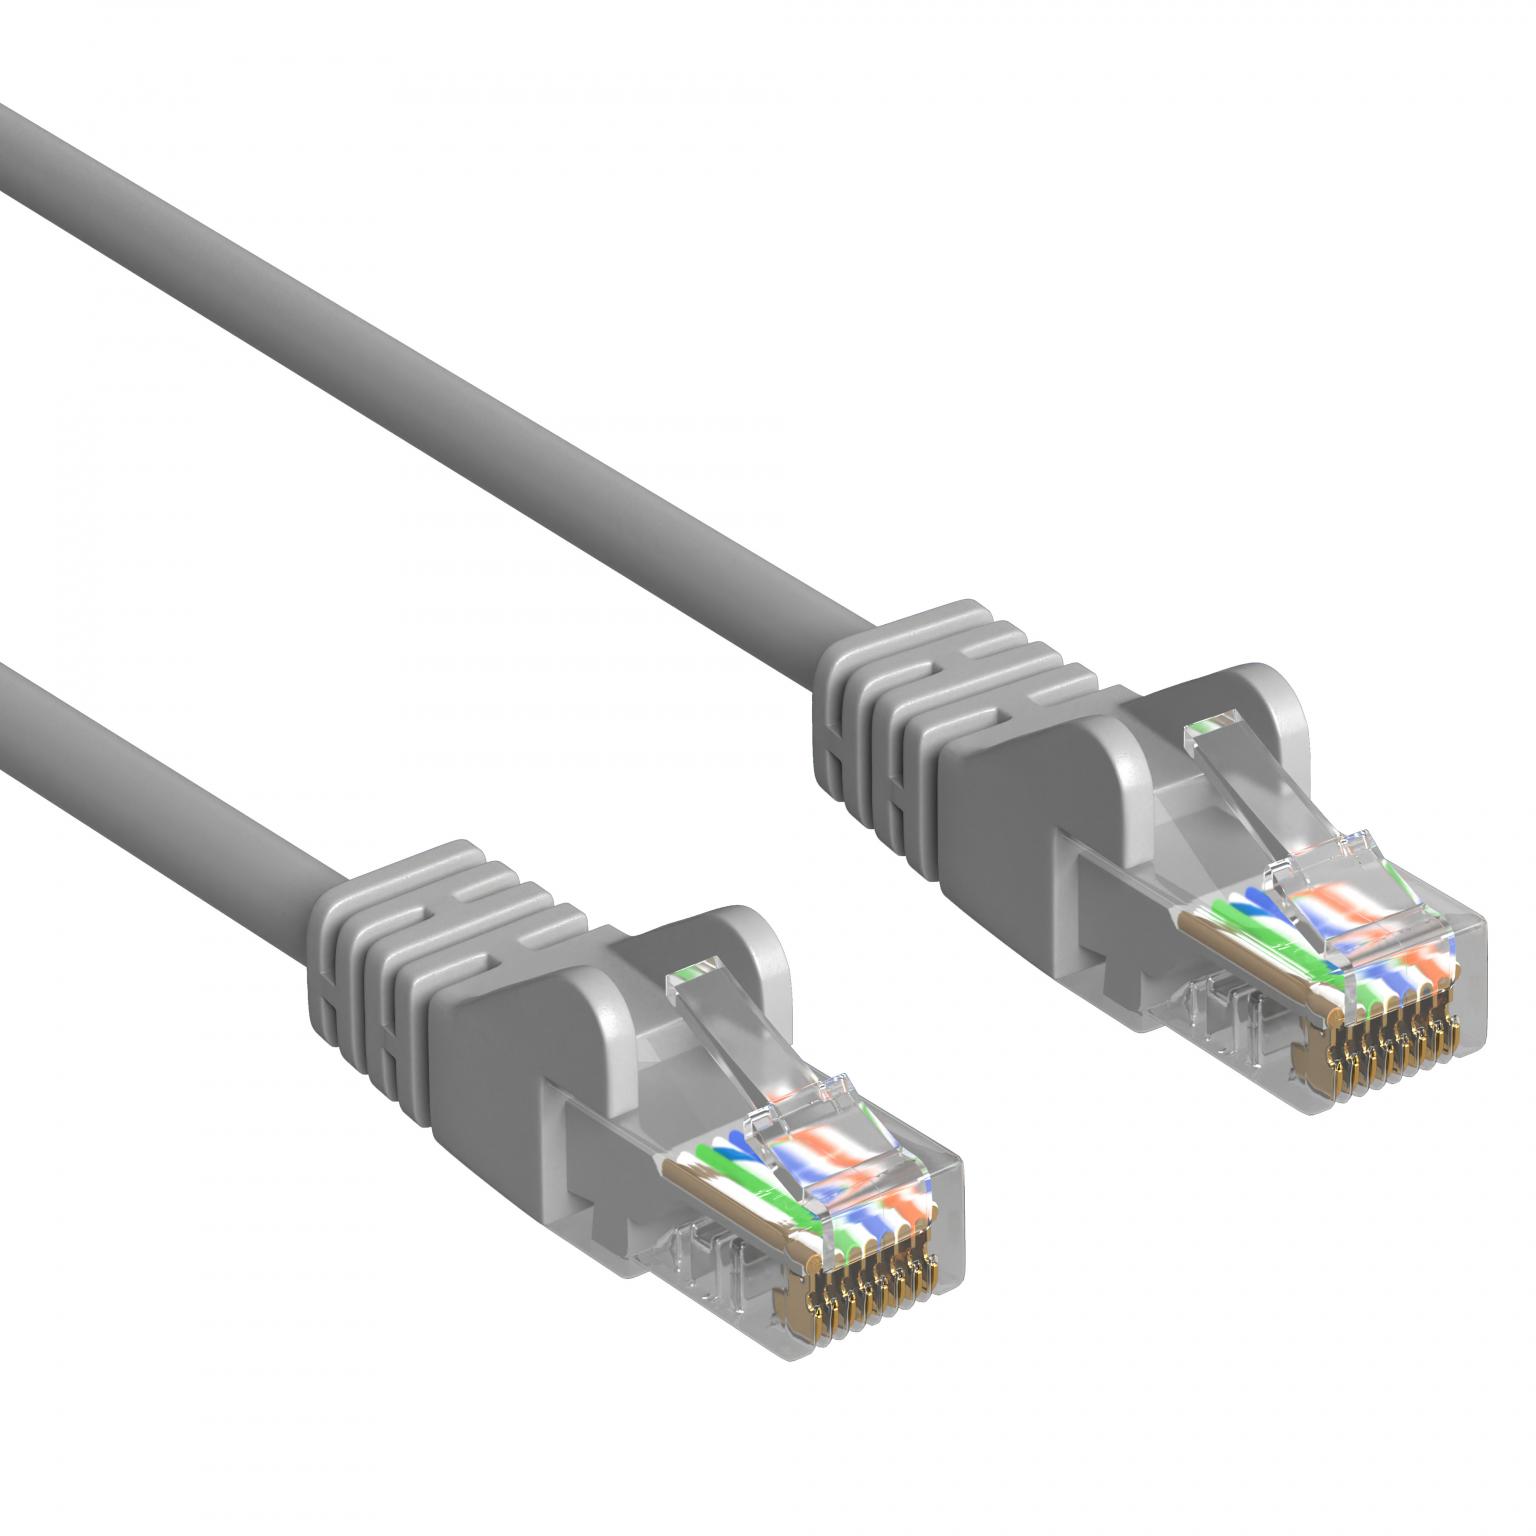 DSL-Netzwerkkabel - 1 Meter - Grau - Allteq